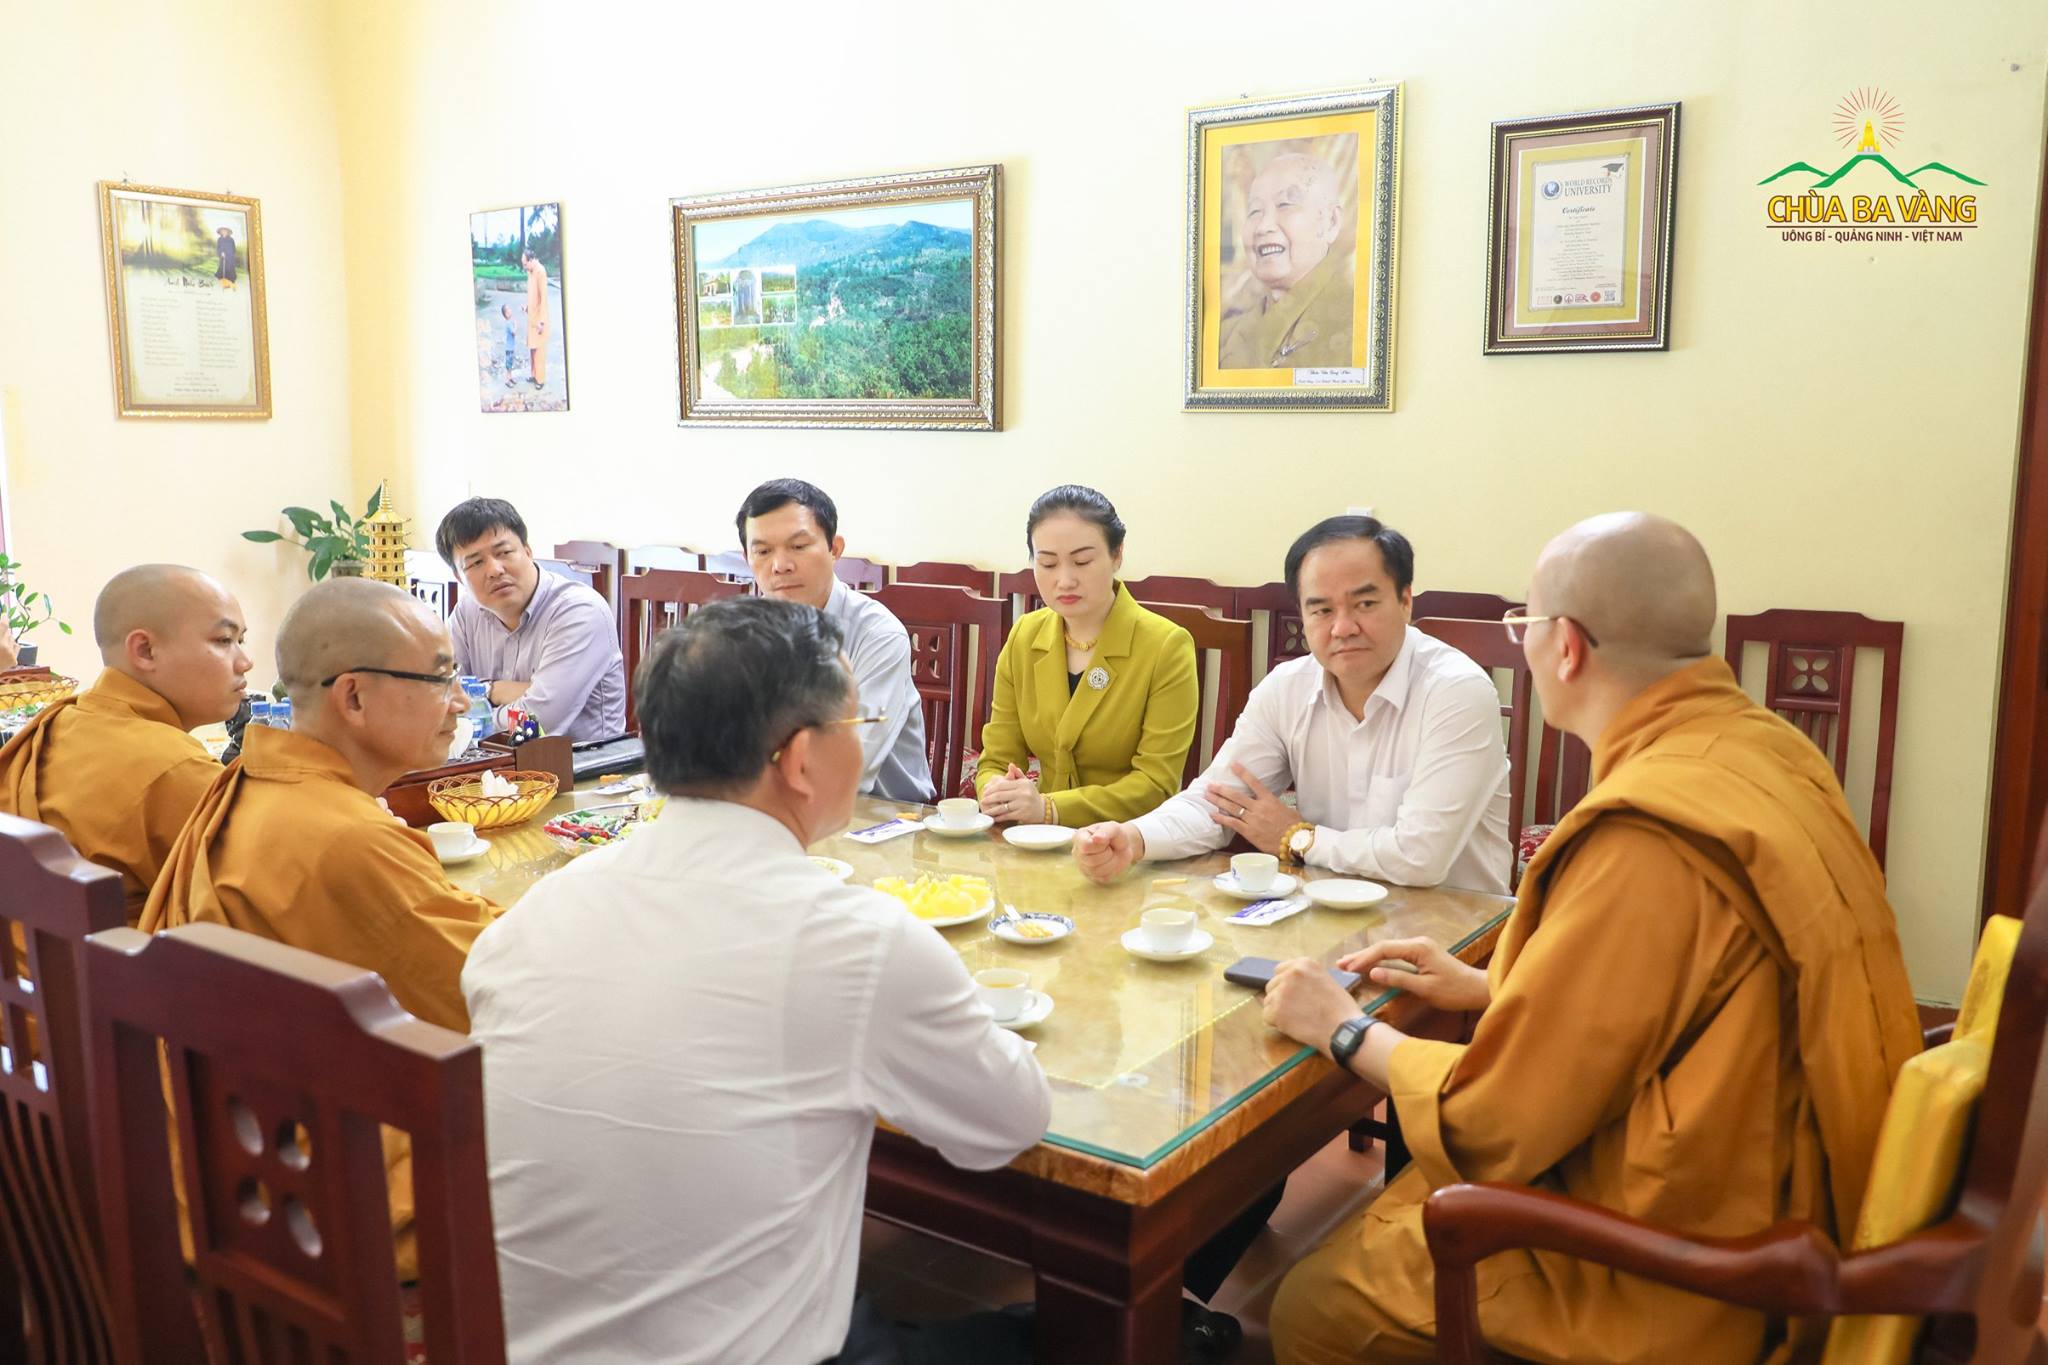 Tại phòng khách, buổi trò chuyện giữa Thầy Trụ Trì Thích Trúc Thái Minh và ông Vũ Chiến Thắng, ông Bùi Hữu Dược cùng phái đoàn đã diễn ra trong không khí thân mật, ấm tình đạo vị.